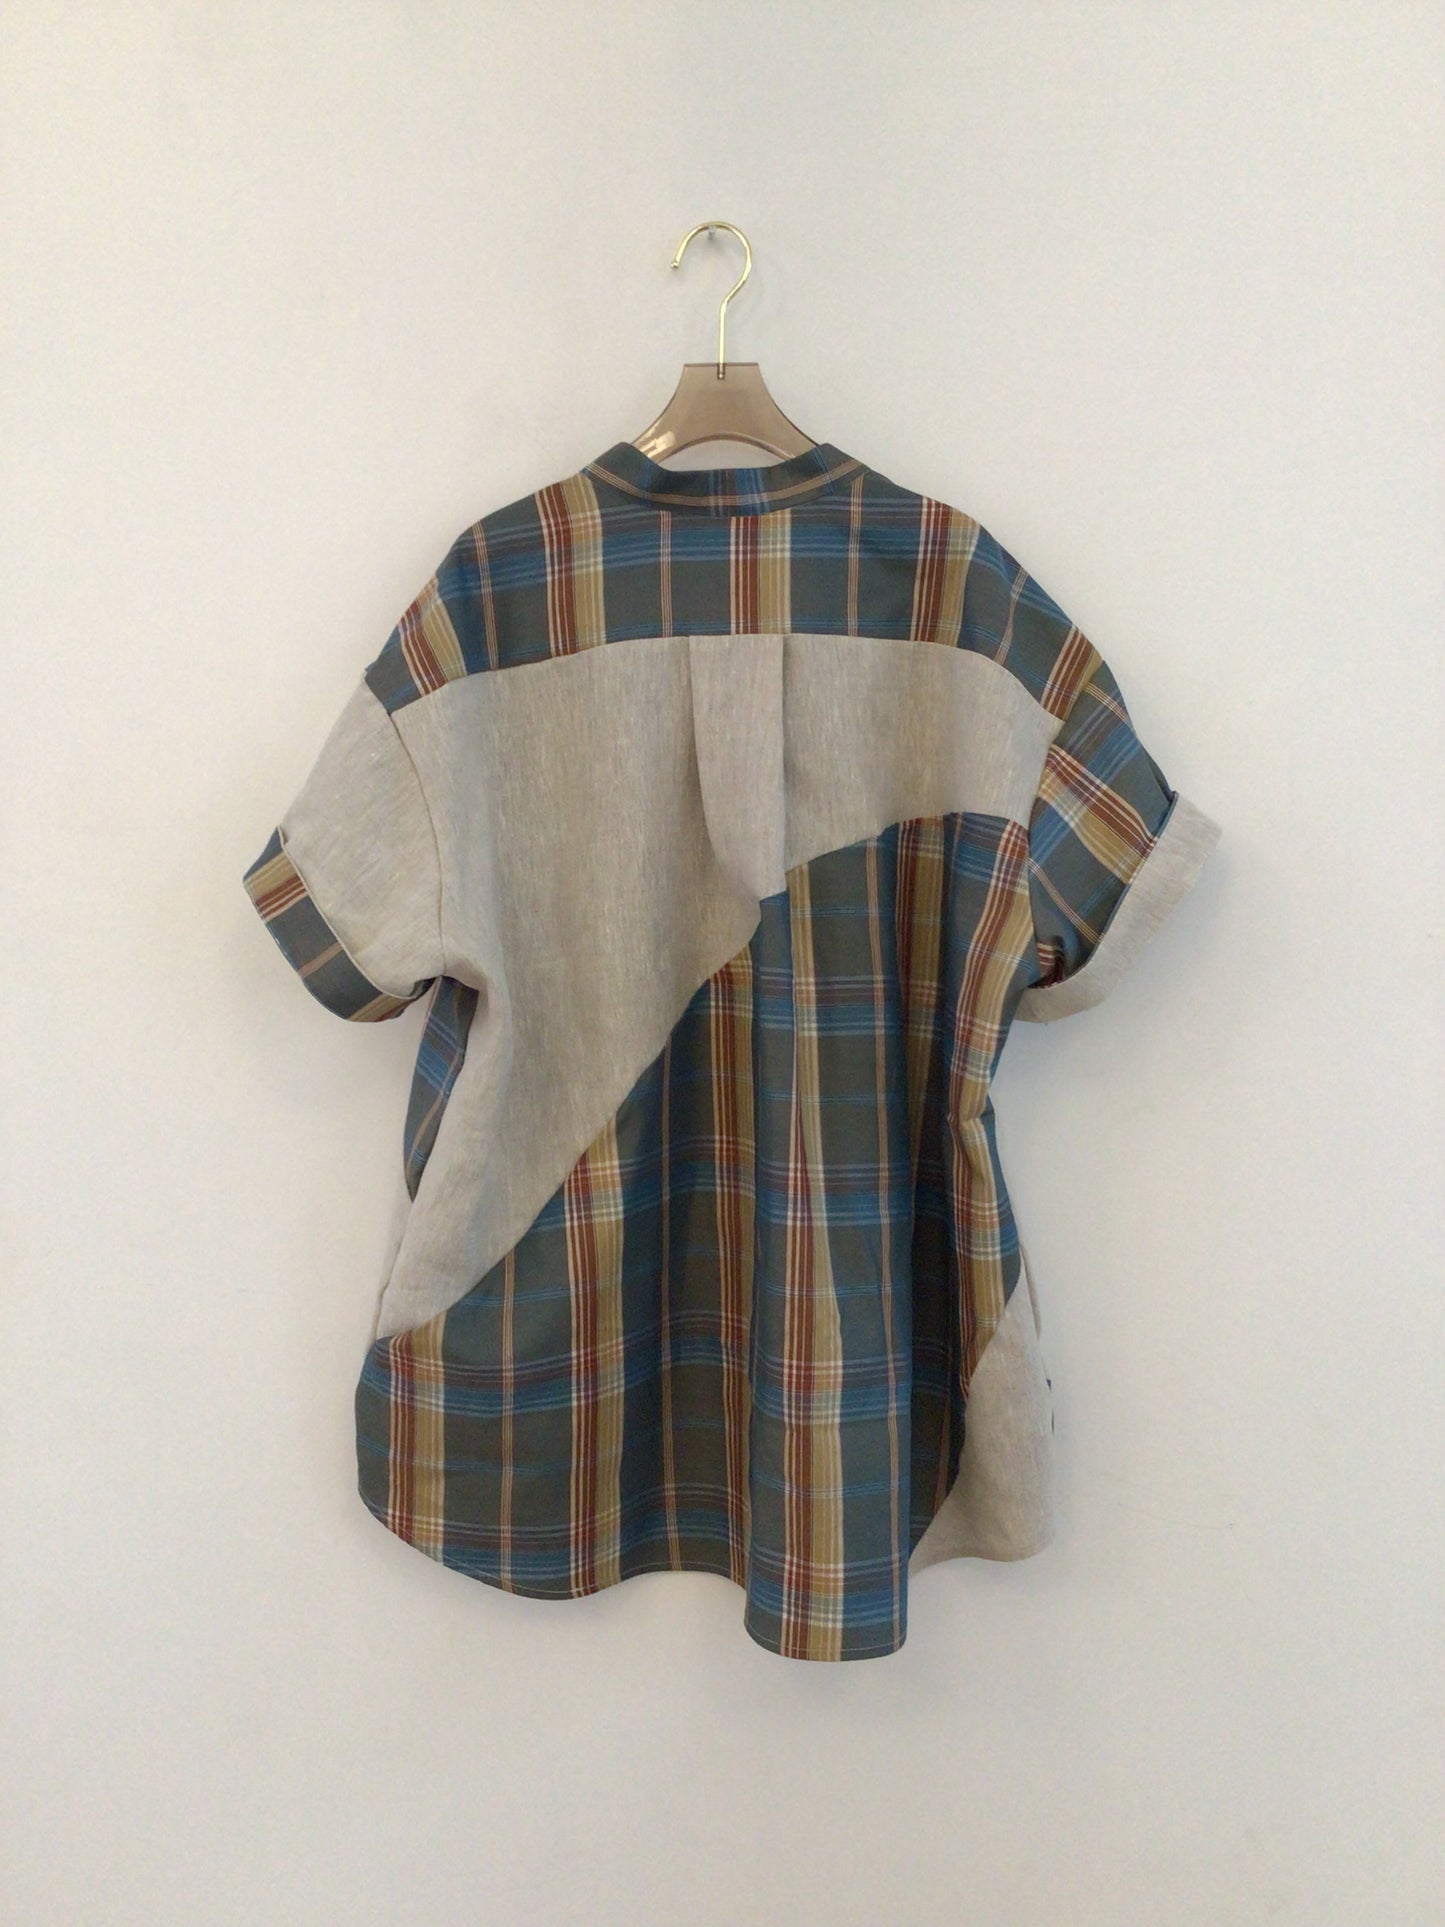 Wave Shirt Linen + Plaid Deadstock Shirt